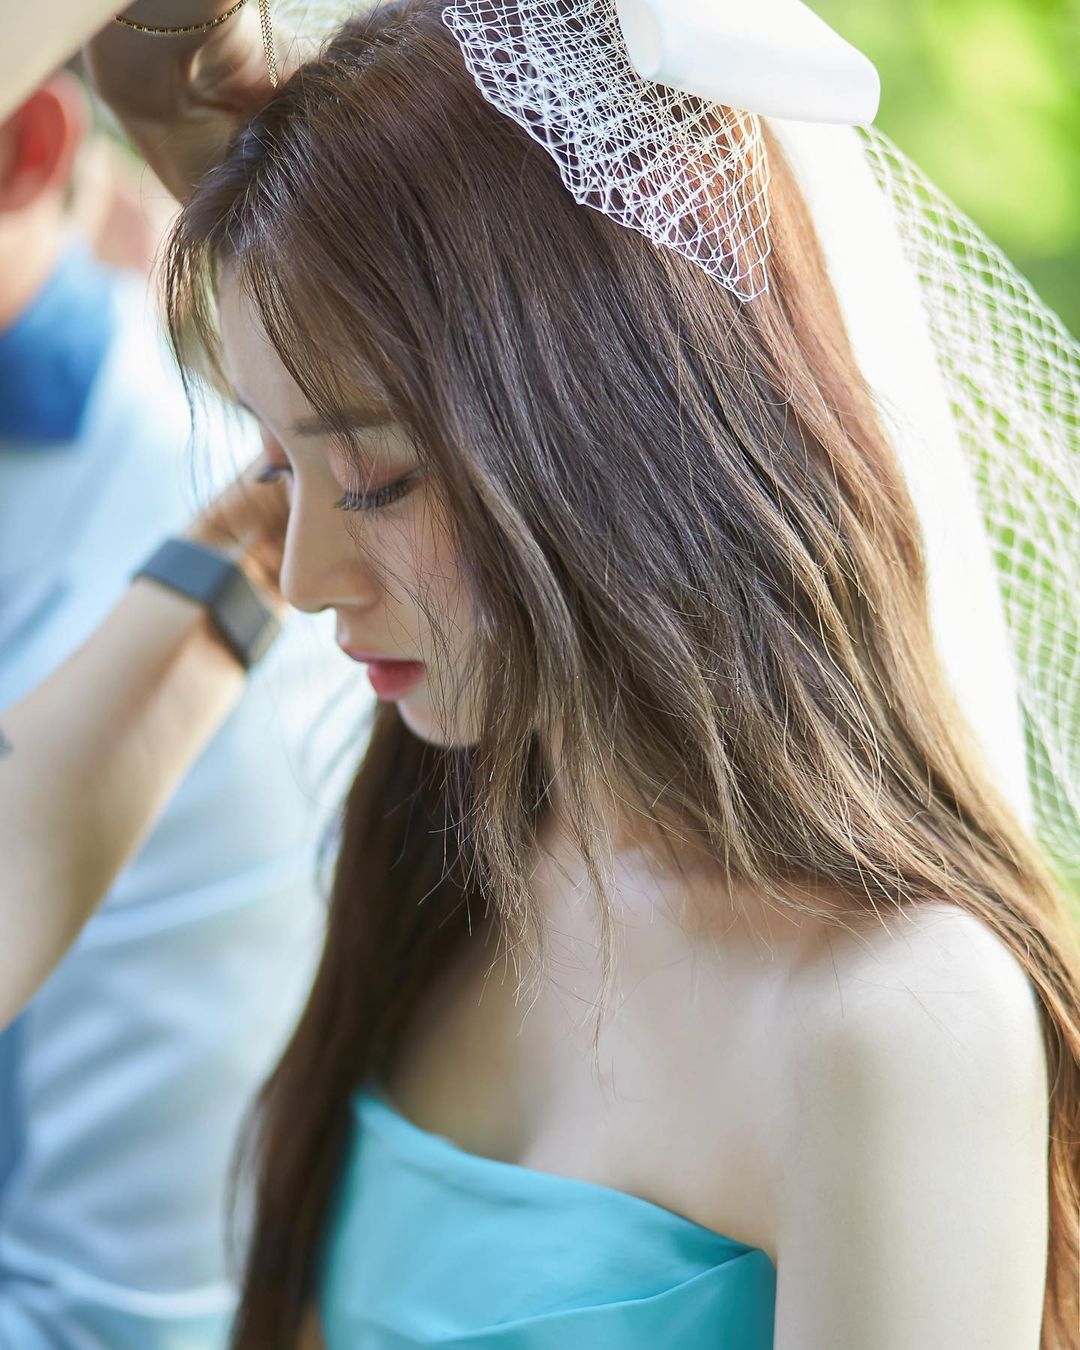 Công bố ảnh cưới độc lạ của Jiyeon (T-ara) và chồng cầu thủ: Cặp đôi cực lầy, cô dâu nữ thần như chụp bìa album - Ảnh 9.